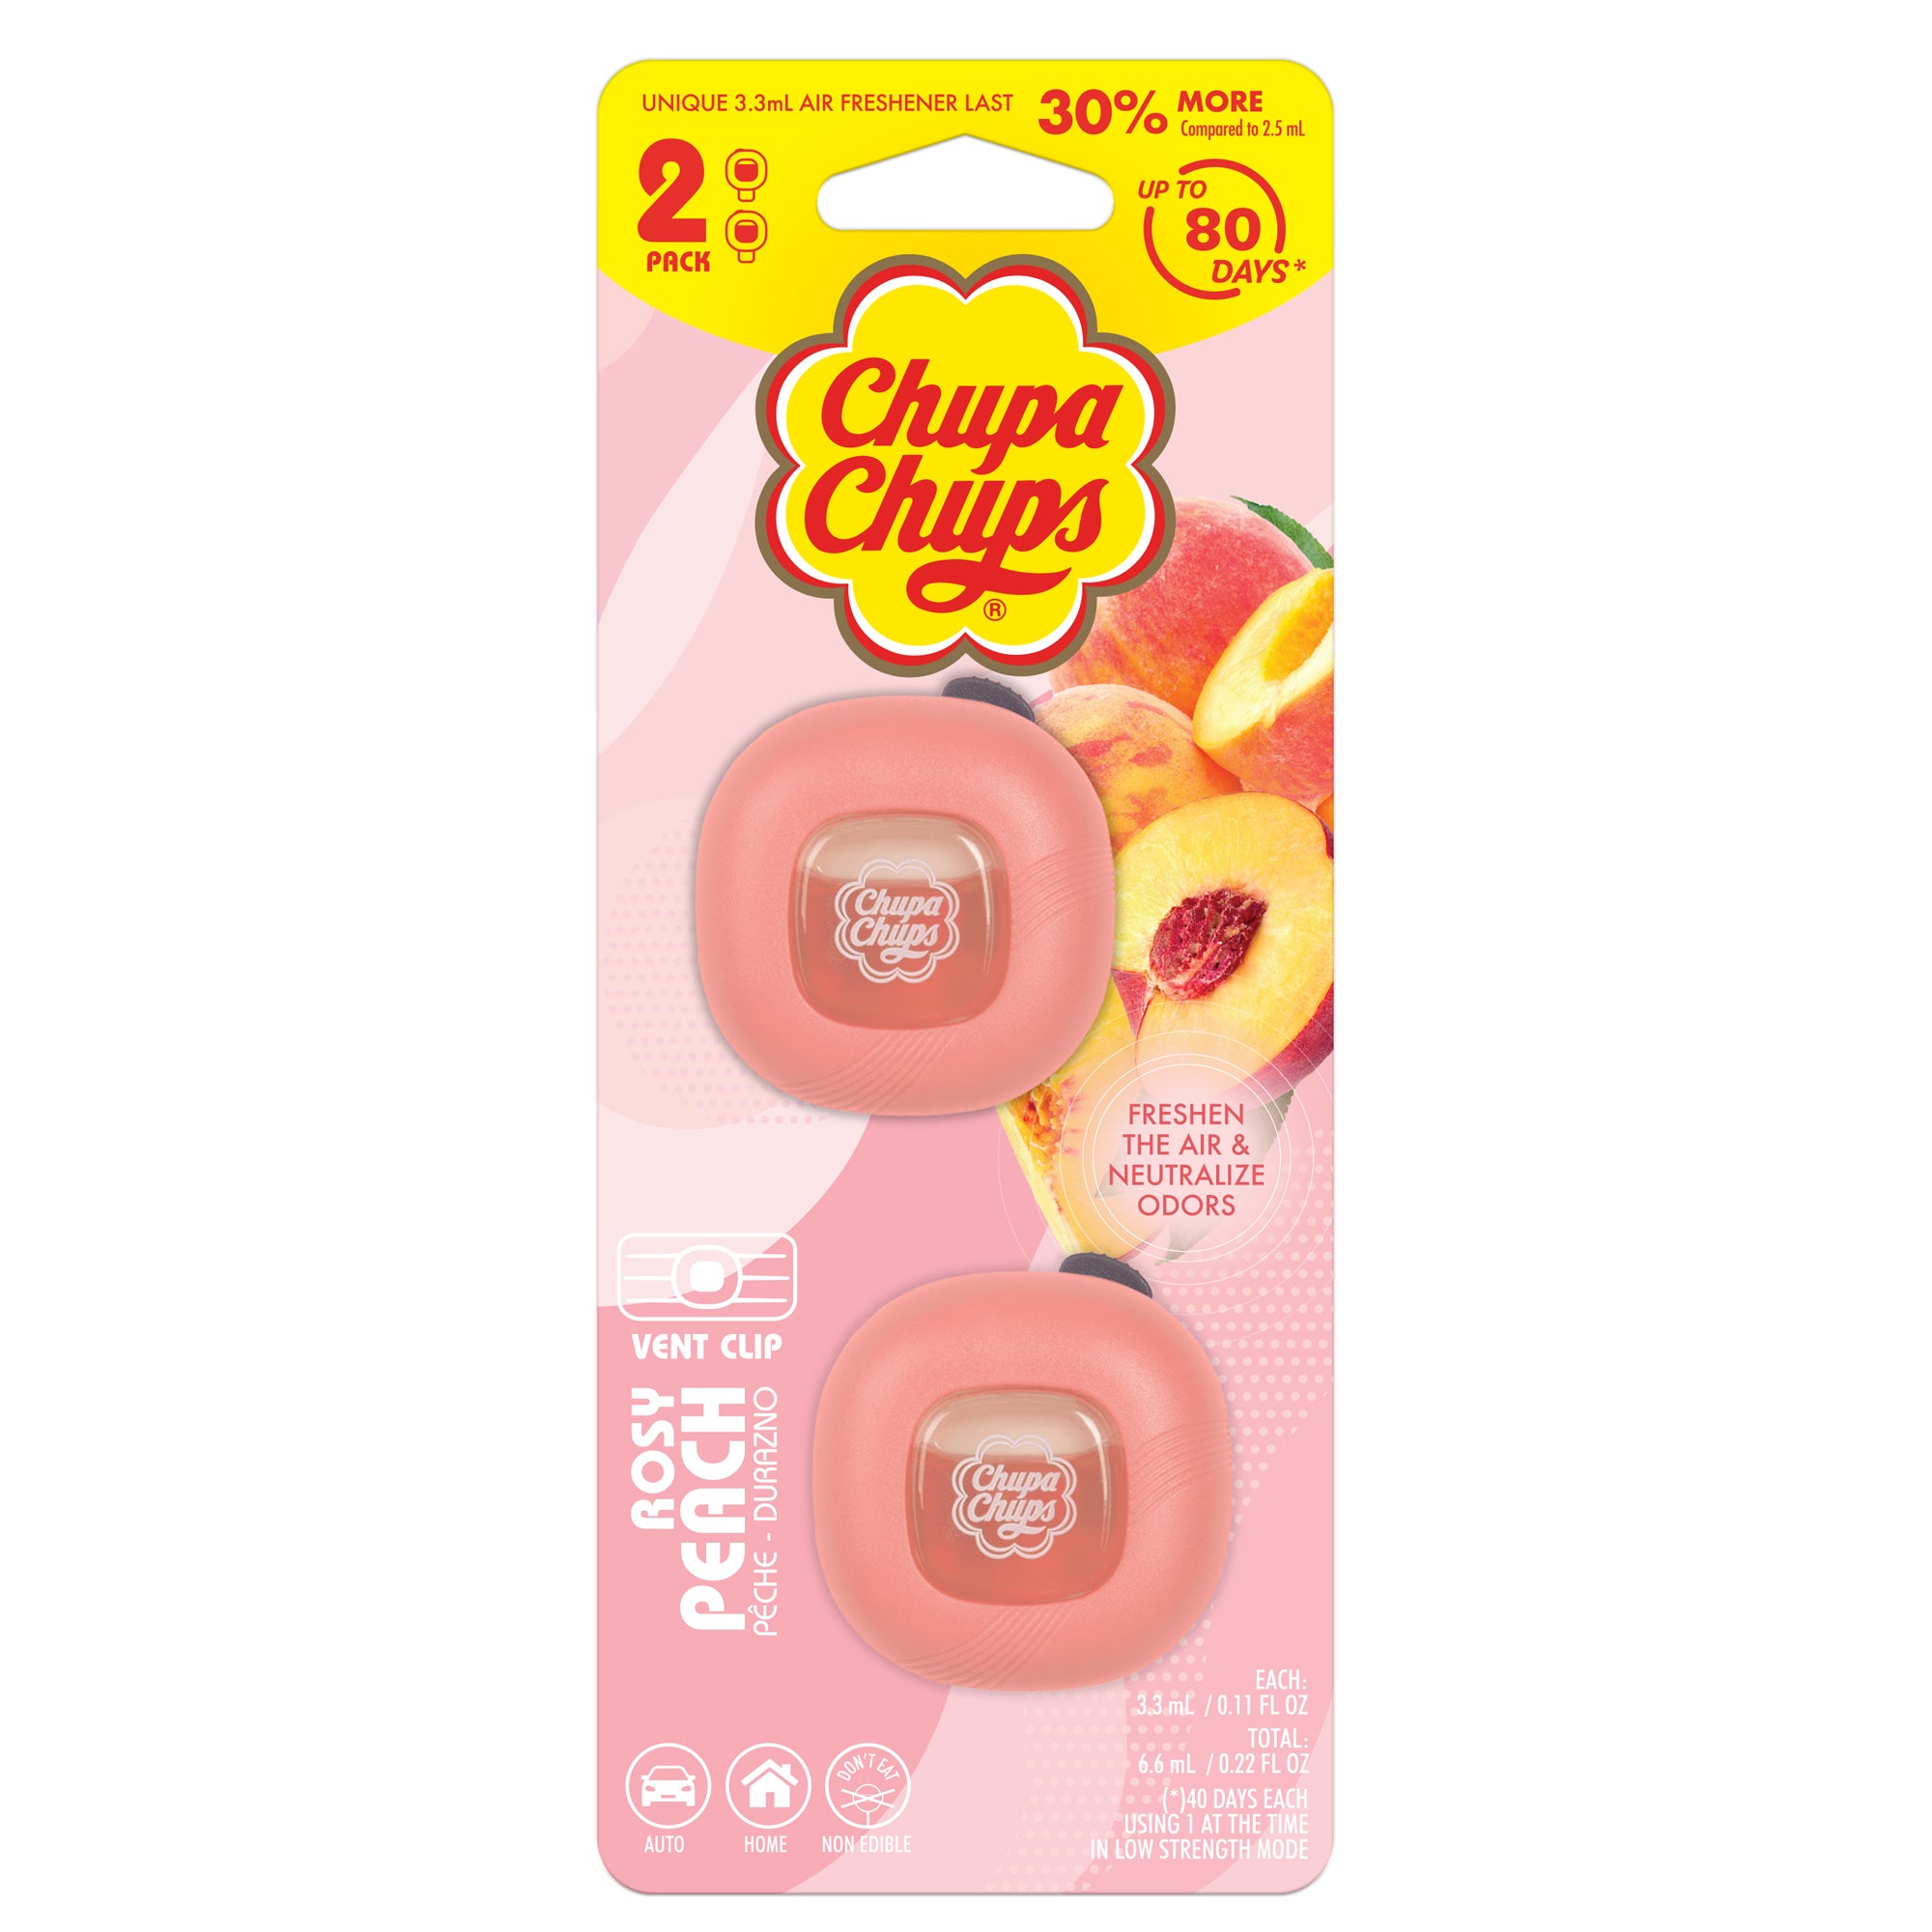 2-Pack Chupa Chups Air Freshener - Rosy Peach